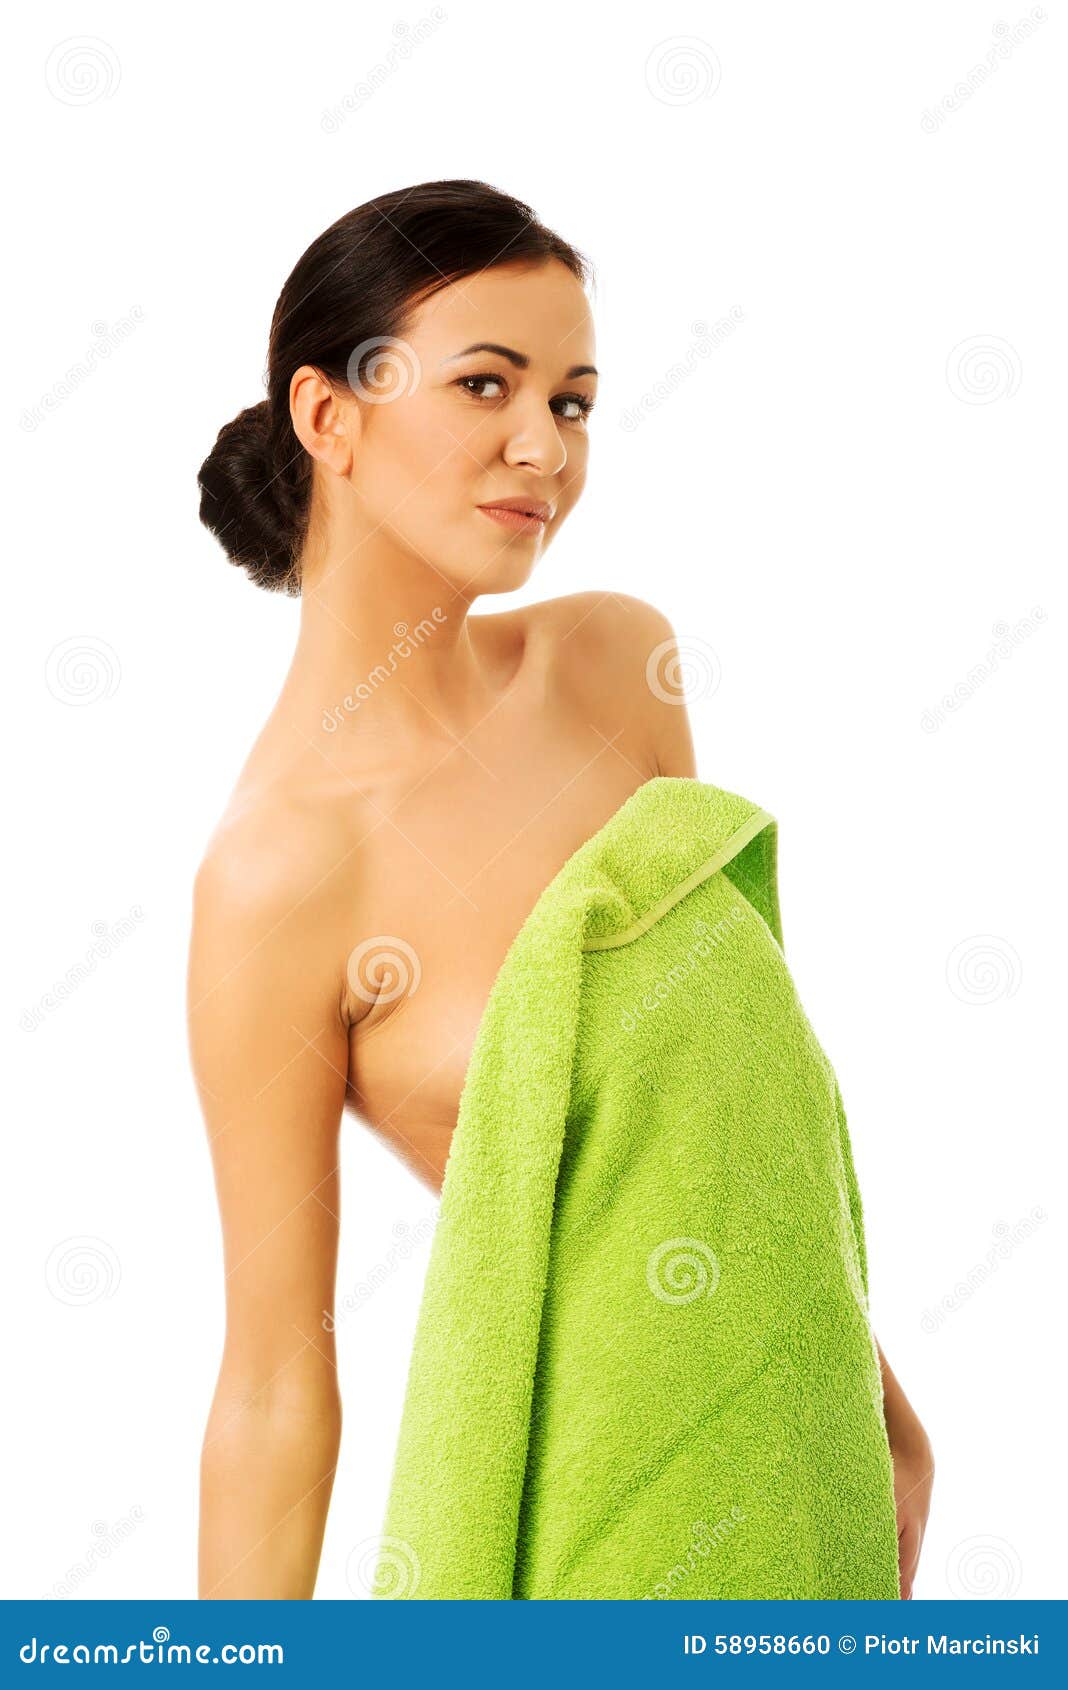 Работа в полотенце. Девушка обернутая в полотенце. Девушка в одном полотенце. Женщины завёрнутые в полотенце. Девушка завернутая в полотенце.